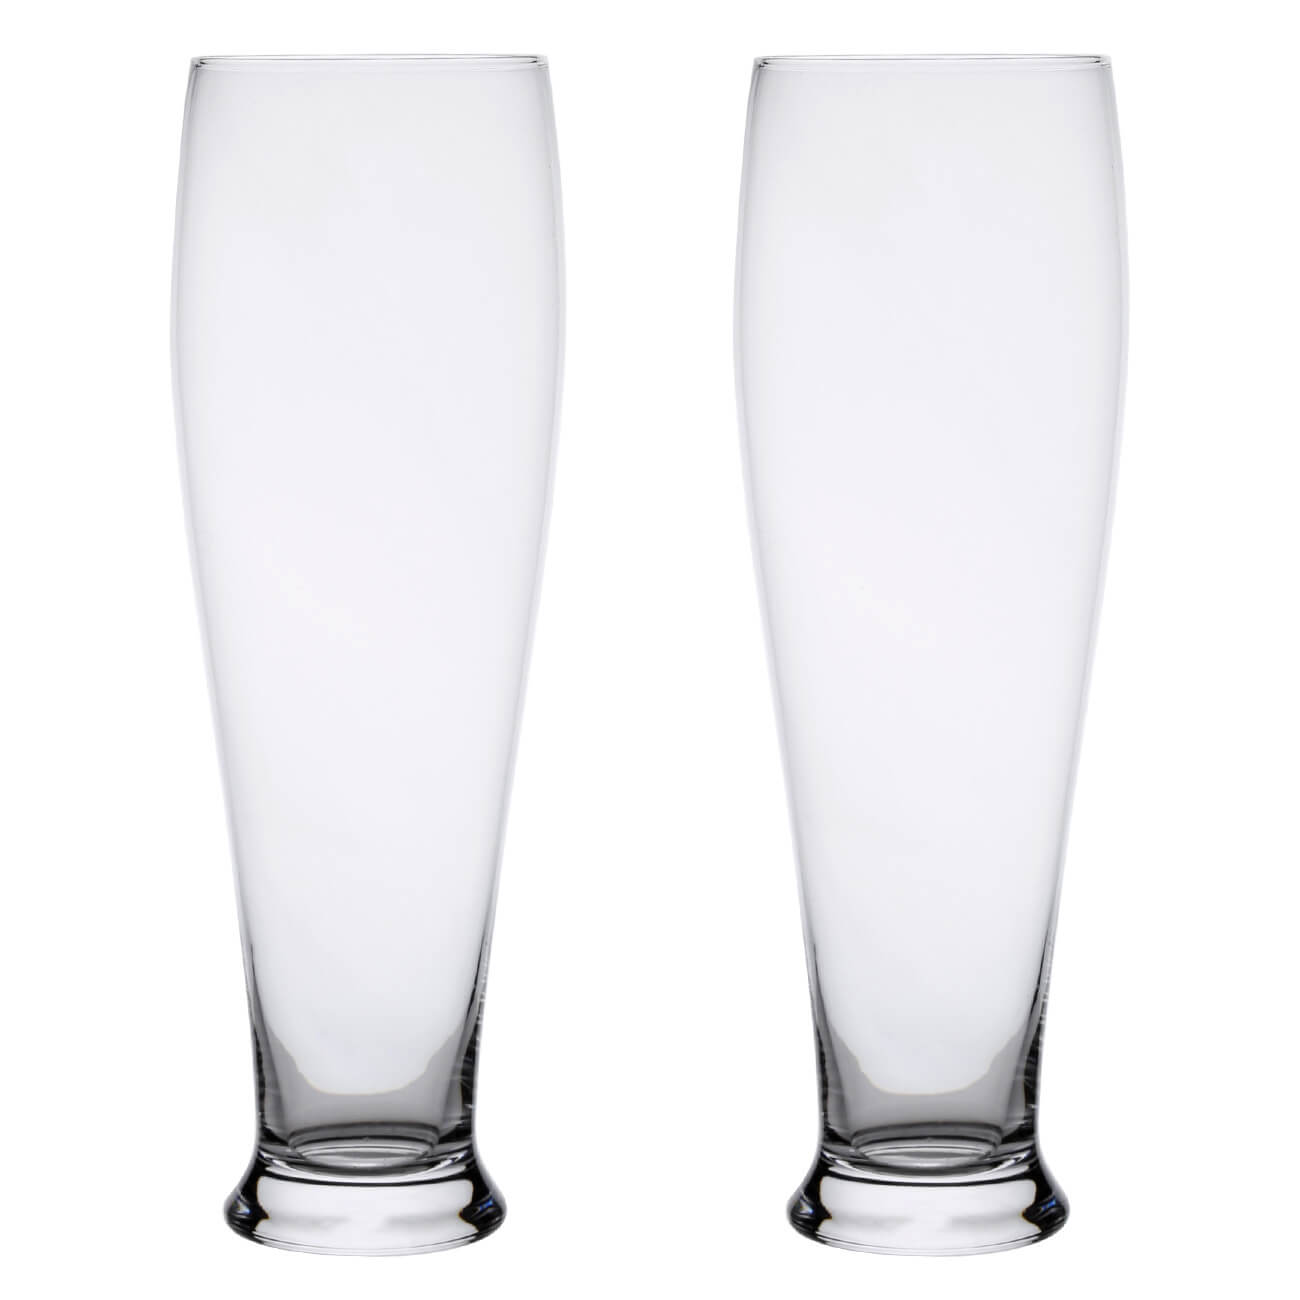 Стакан для пива, 650 мл, 2 шт, стекло, Clear стакан для пива luminarc тюлип пивные страны q1033 570мл